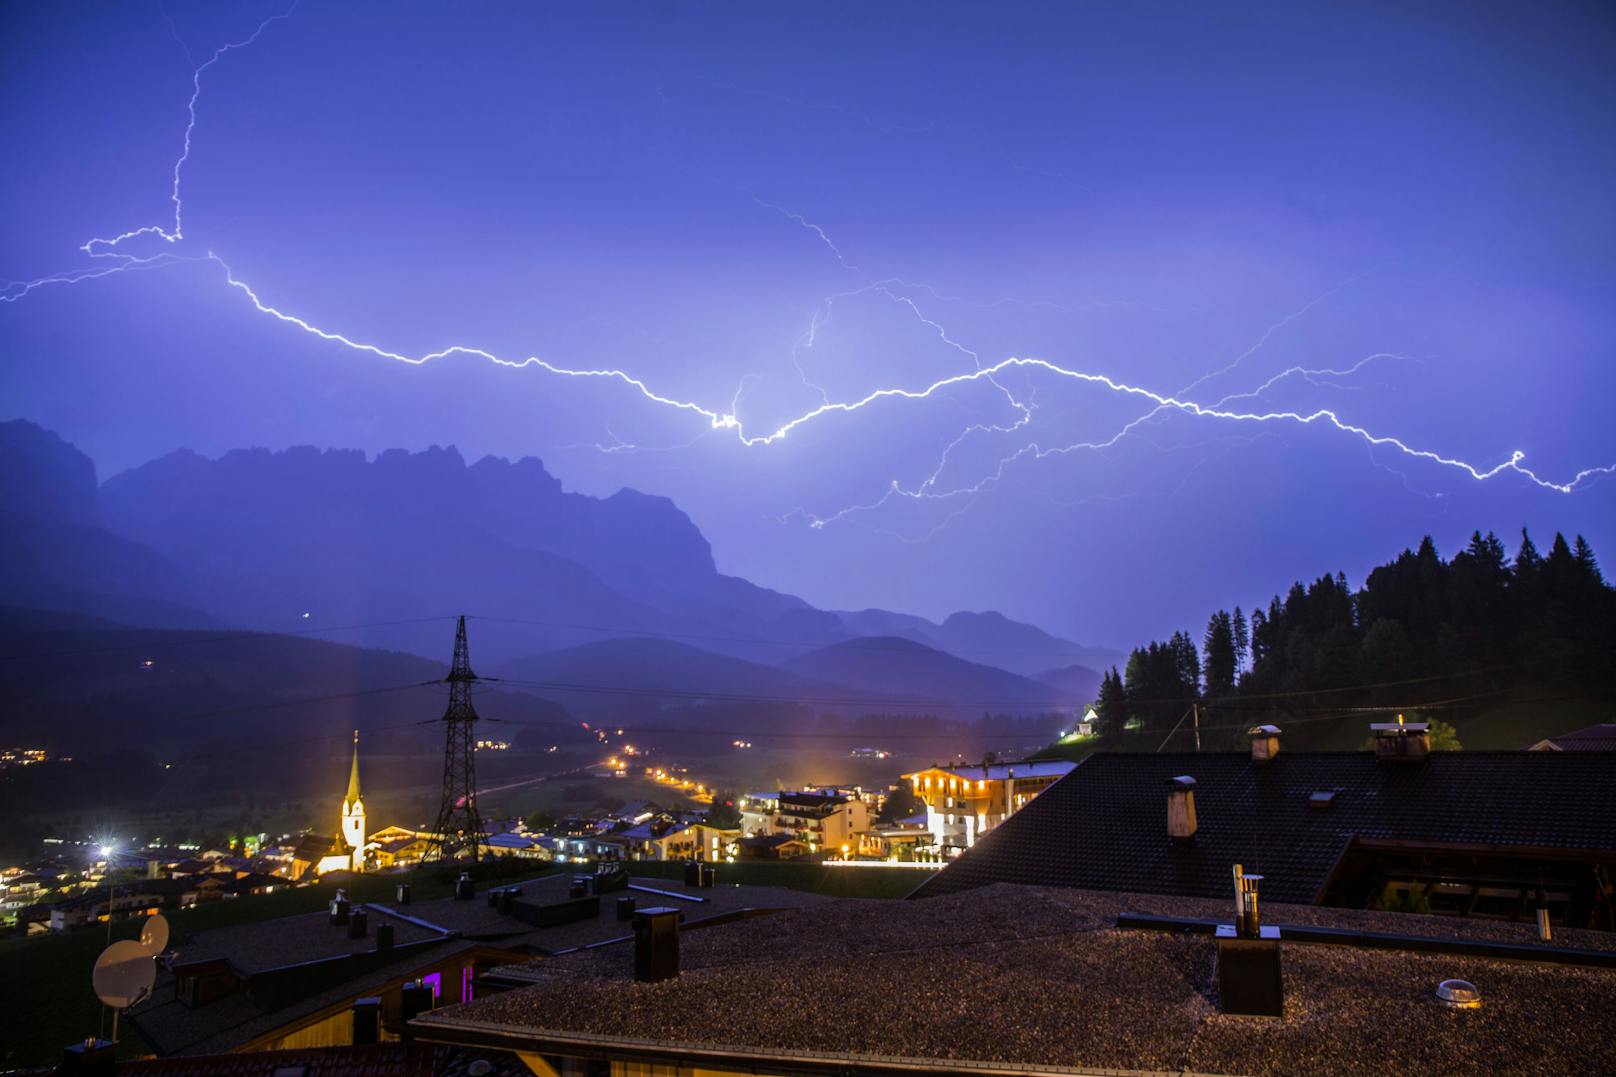 Blitze über dem abendlichen Himmel von Ellmau in Tirol. (Archivbild)